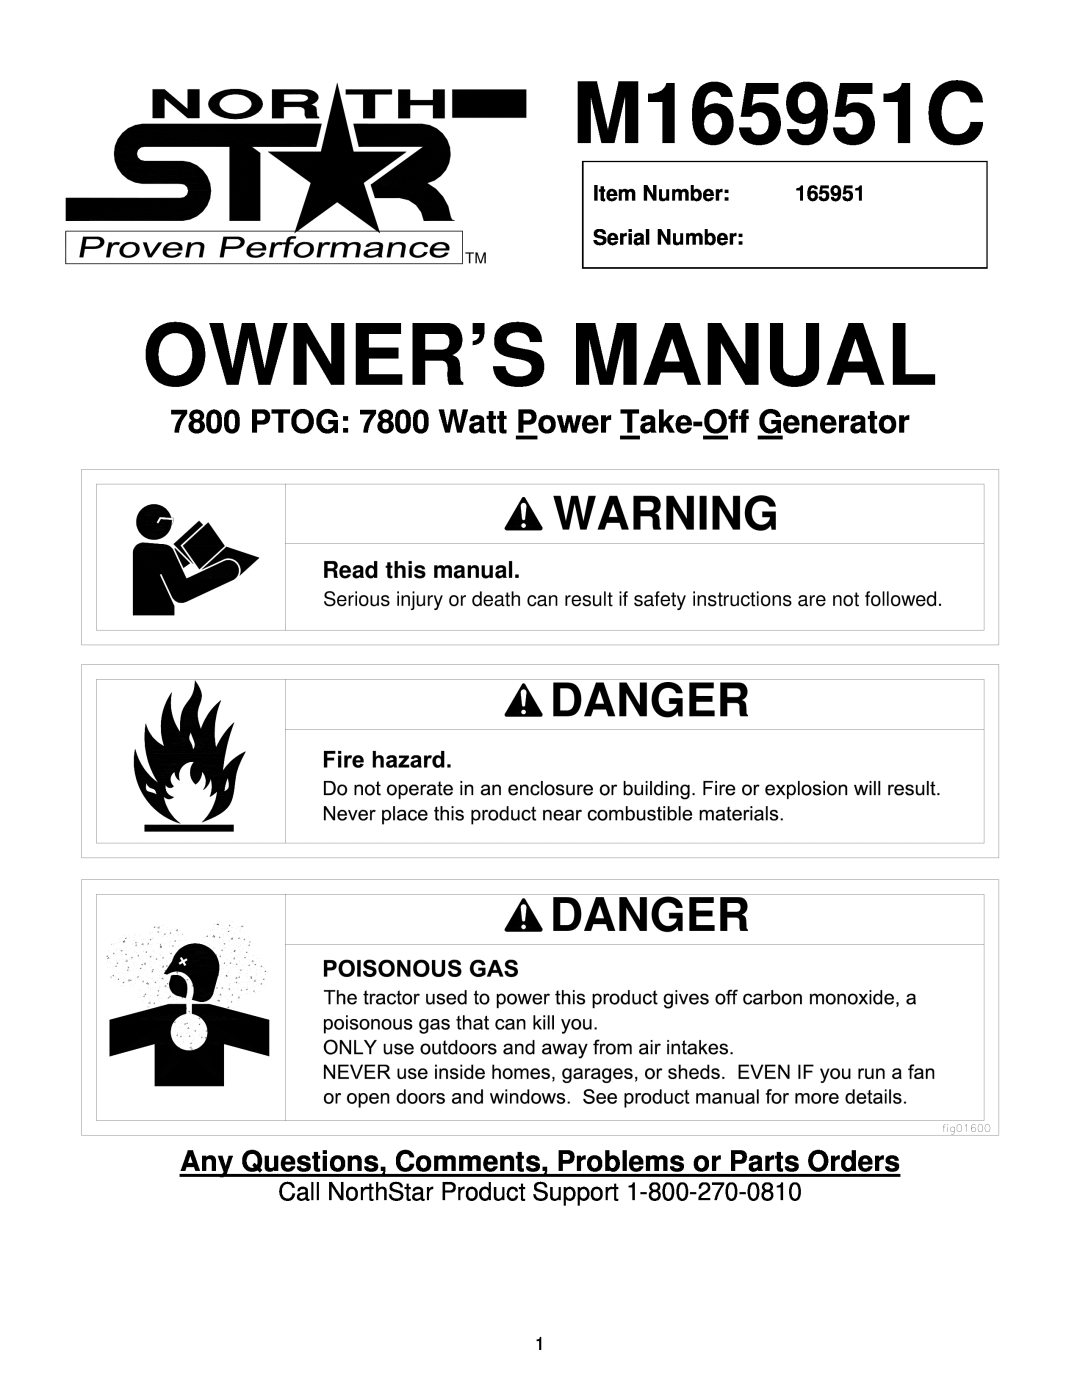 North Star M165951C owner manual Owner’S Manual, Danger, PTOG 7800 Watt Power Take-Off Generator, Read this manual 